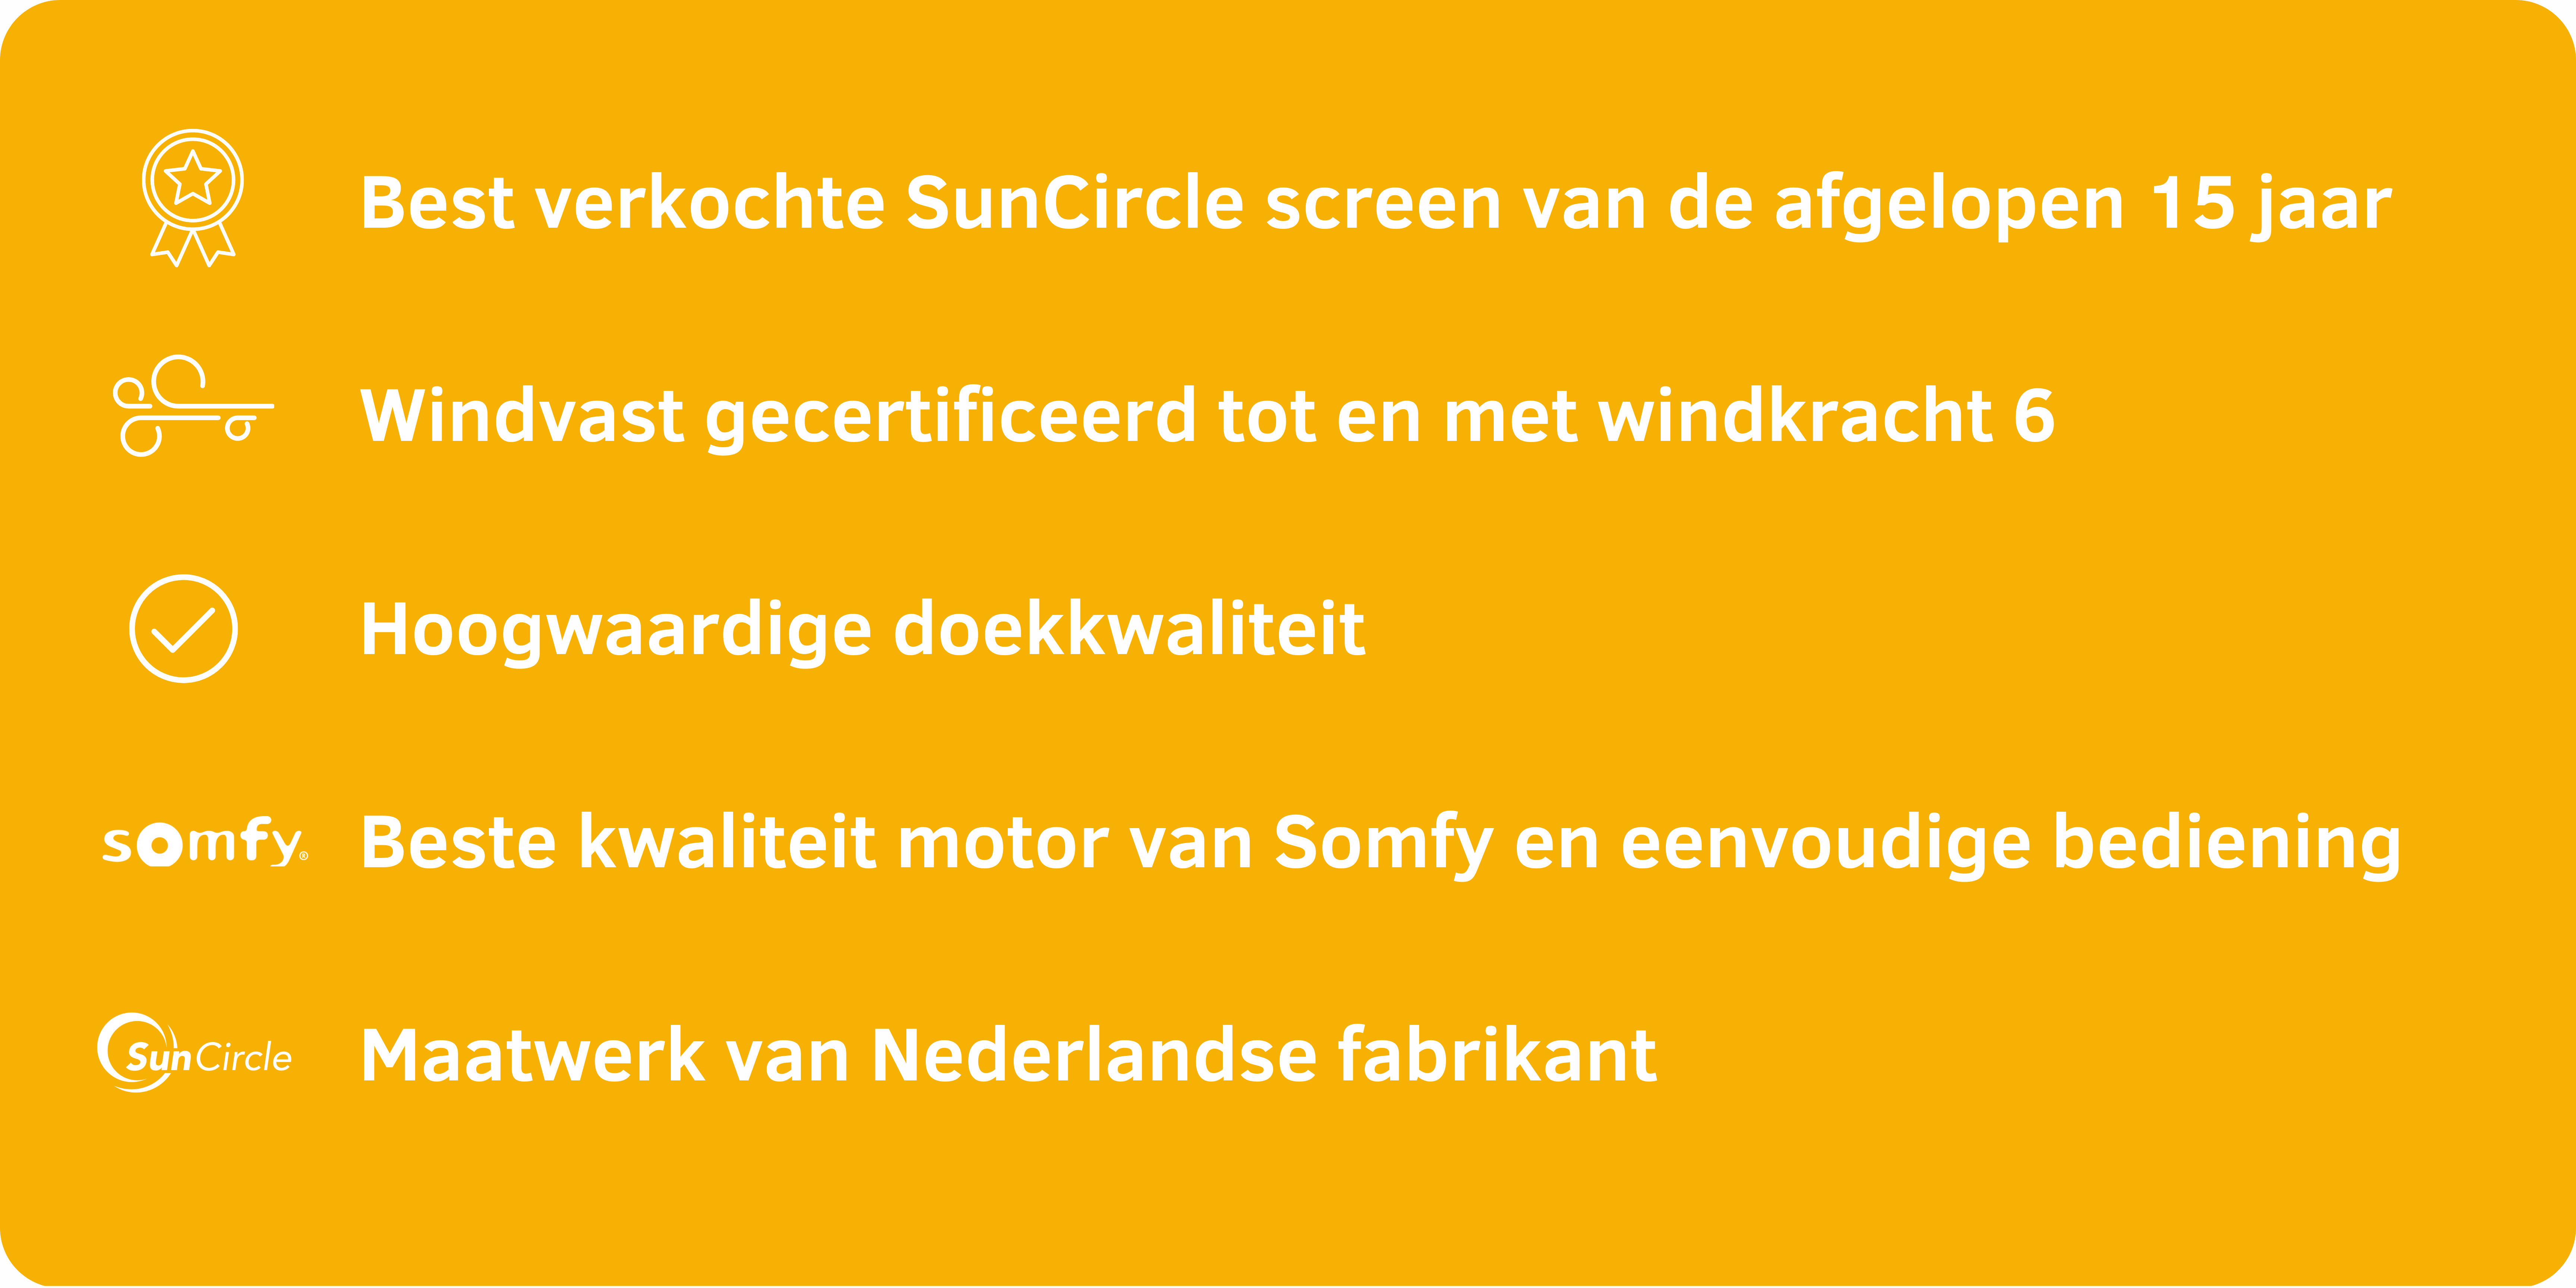 Best verkochte SunCircle screen van de afgelopen 15 jaar (4)